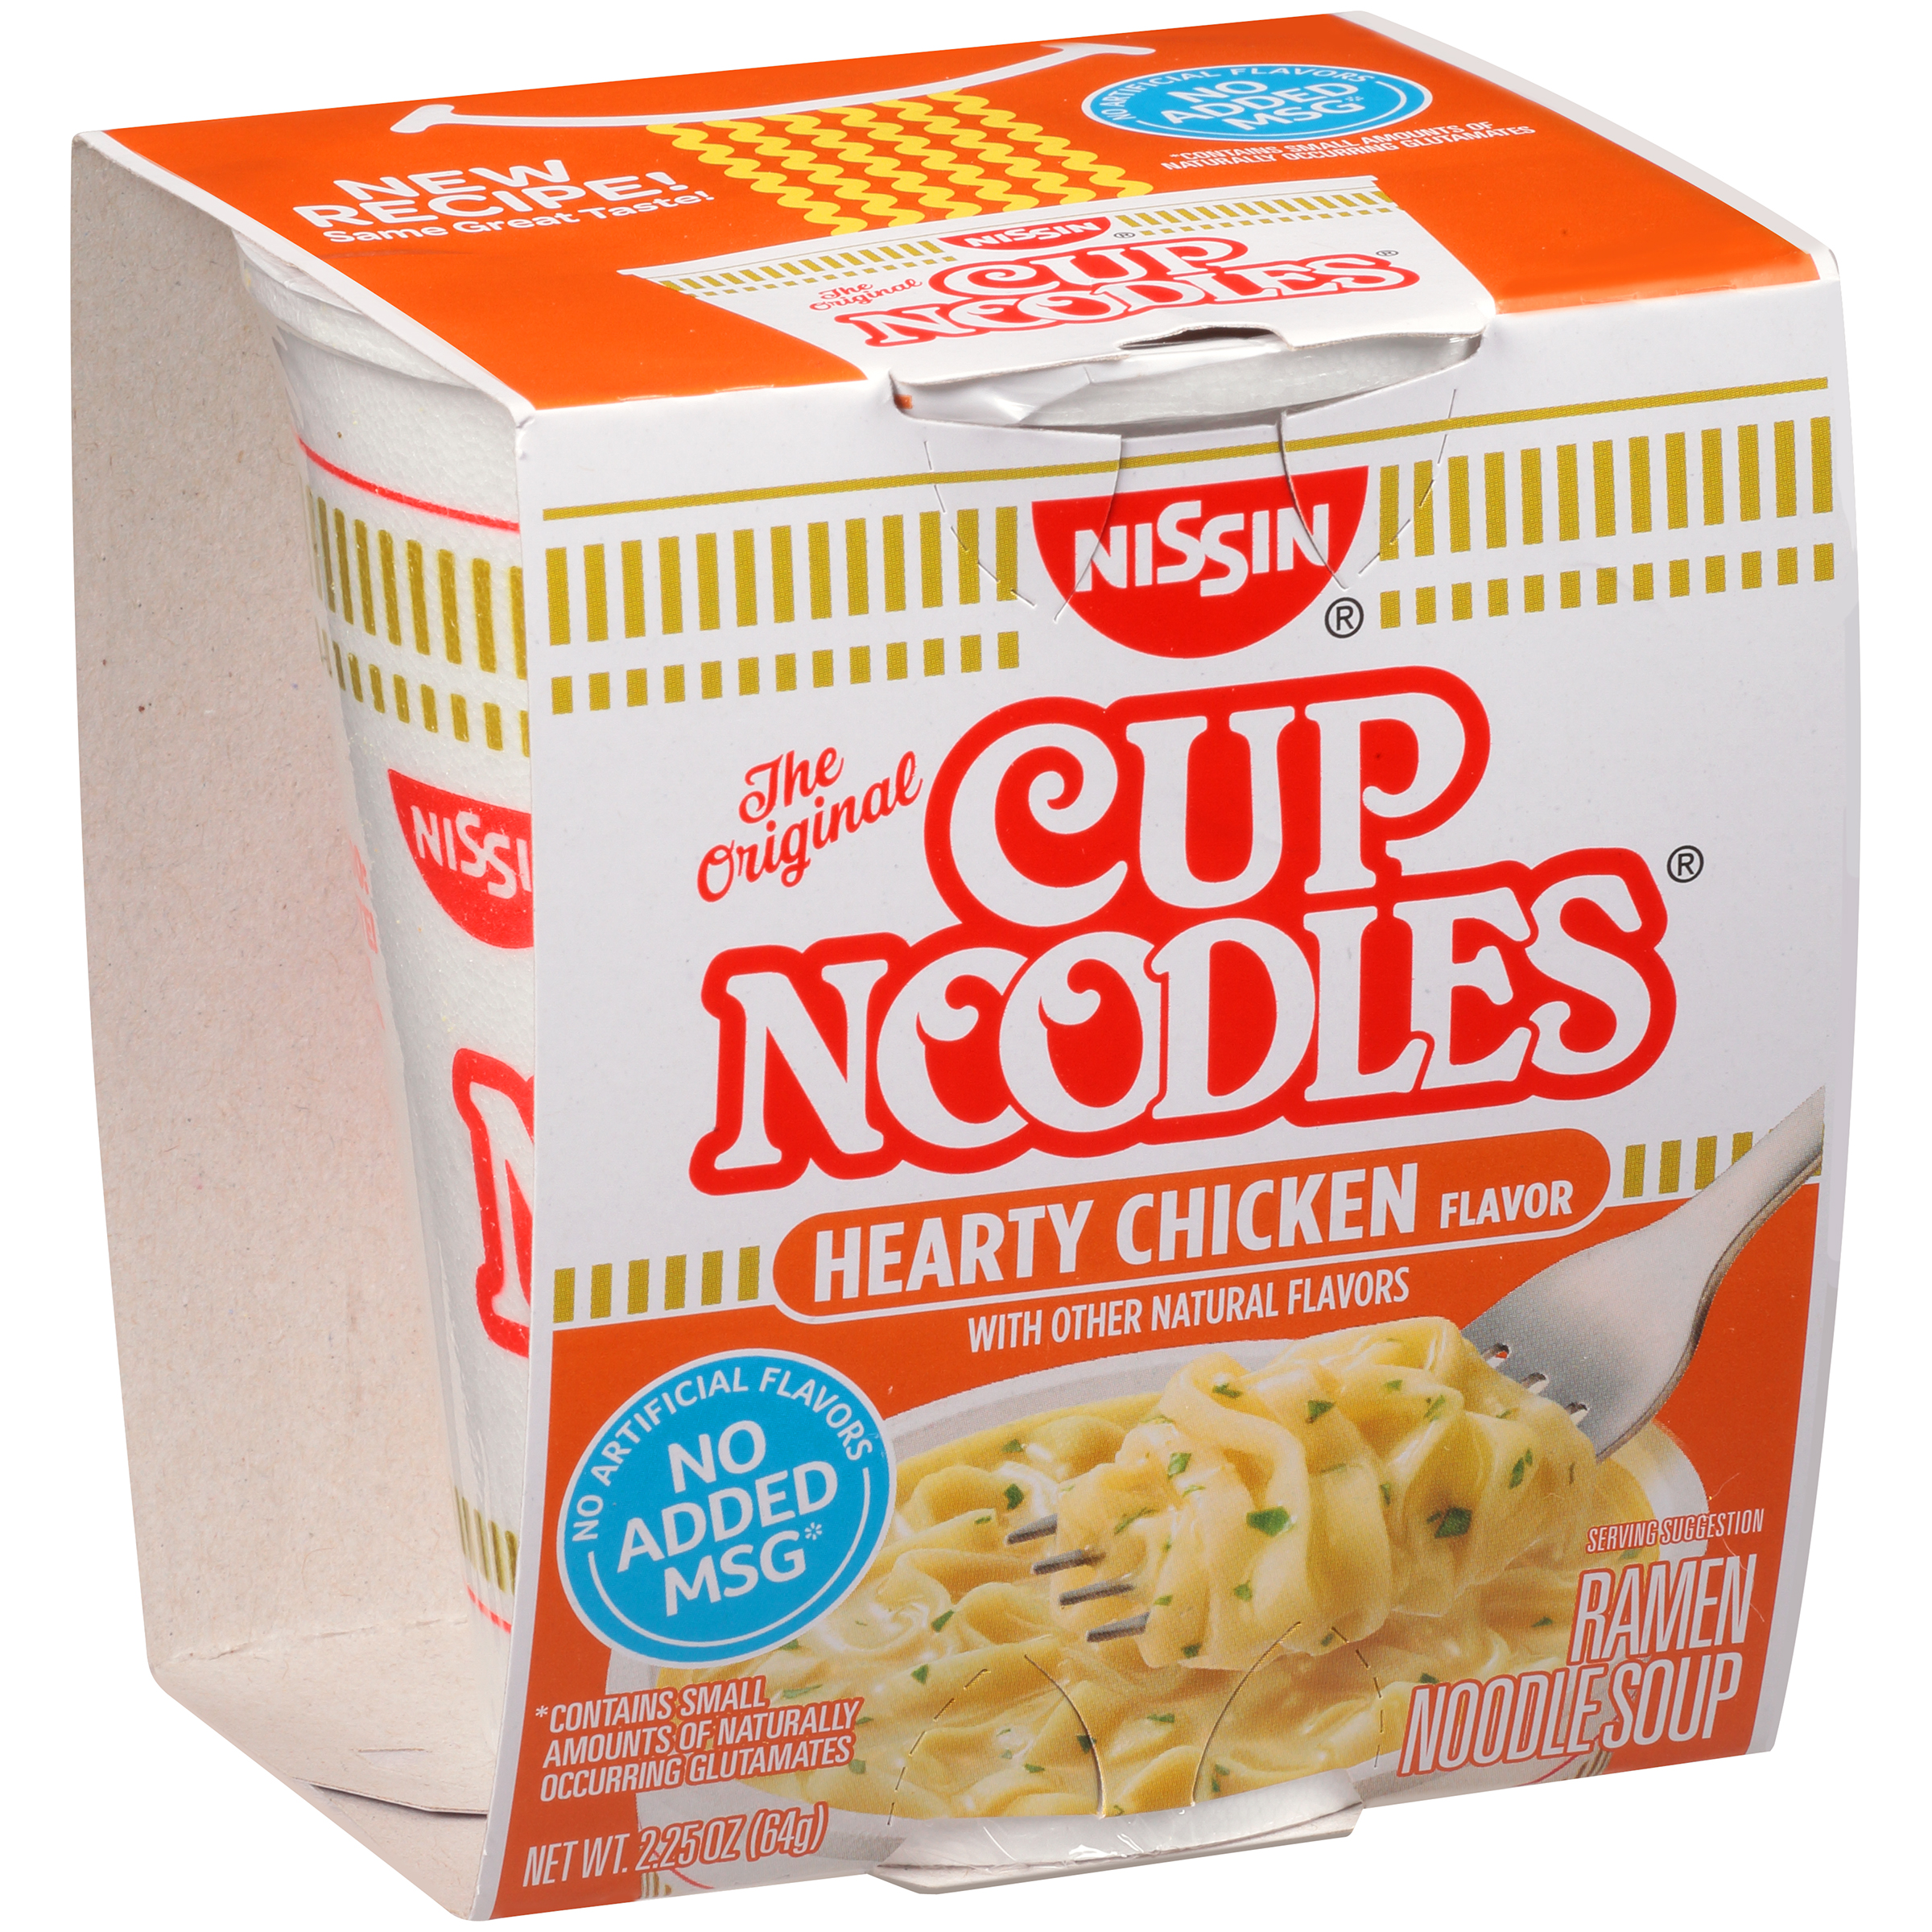 Nissan® Cup Noodles® Hearty Chicken Flavor Ramen Noodle Soup 2.25 oz